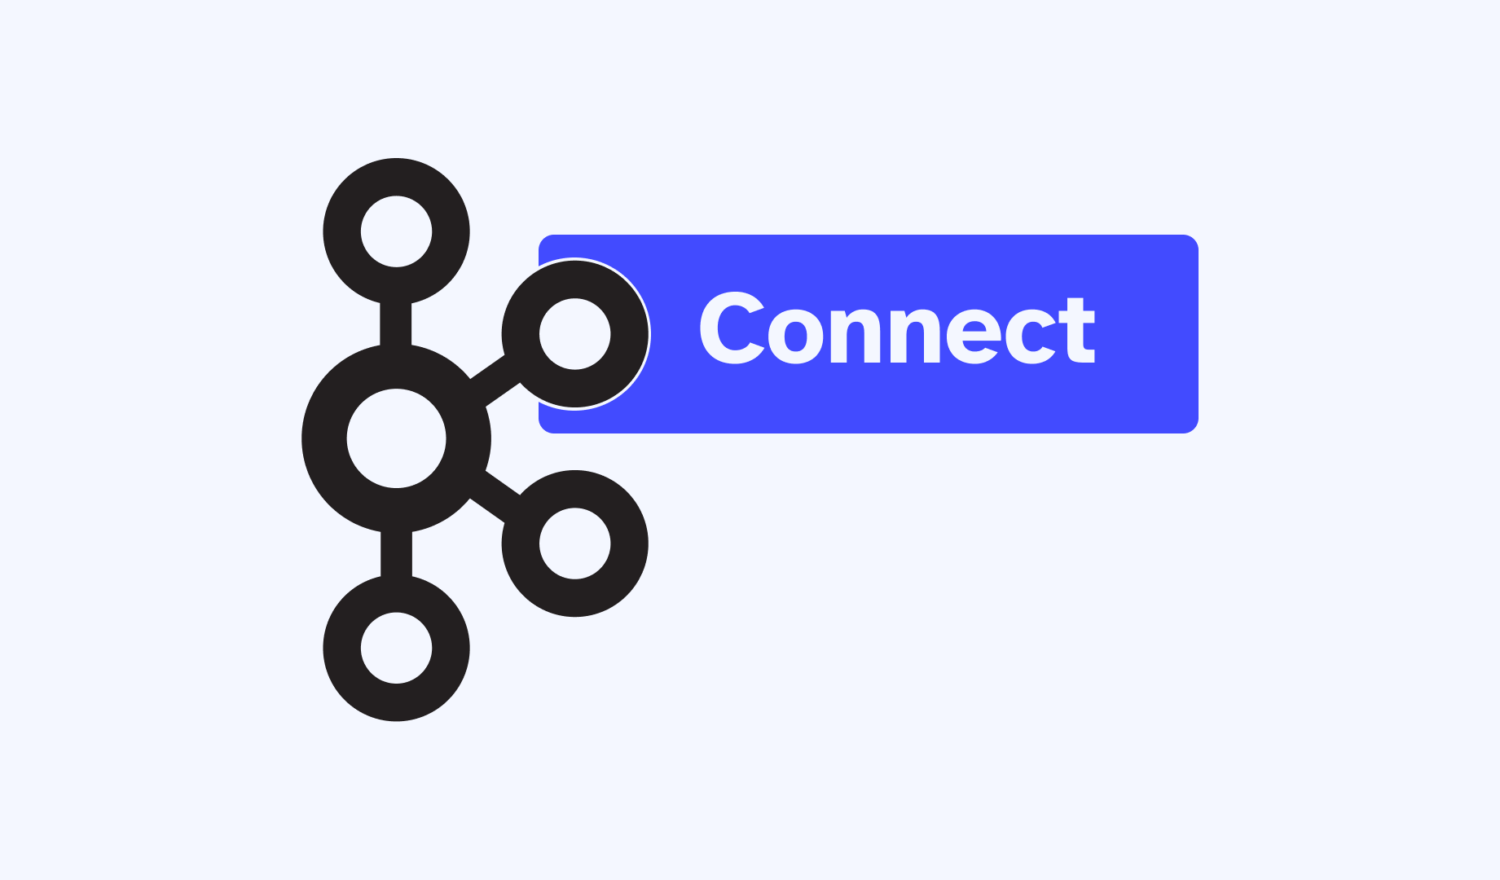 Ein Connector schmiegt sich um einen Ring des Kafka-Logos.